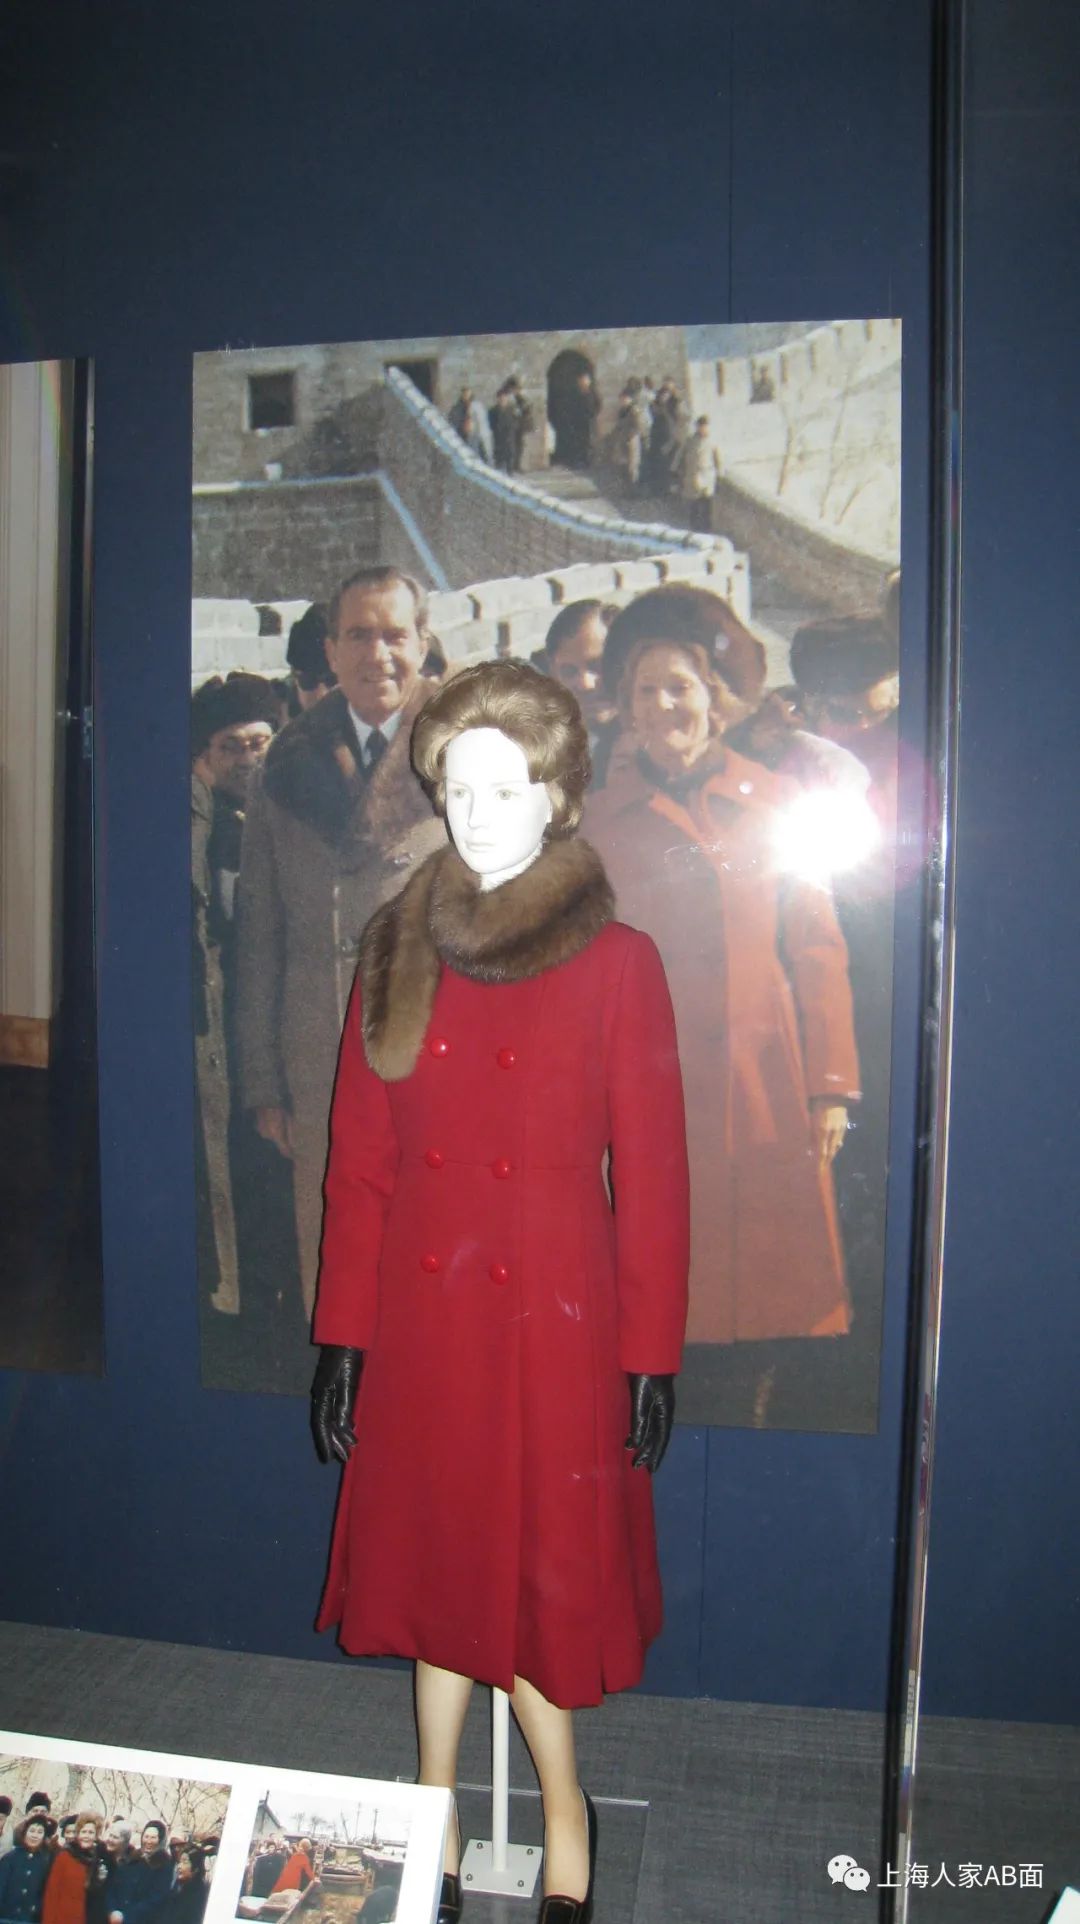 尼克松夫人佩蒂·尼克松所穿的红色大衣耀眼夺目,这不仅是热情友好的